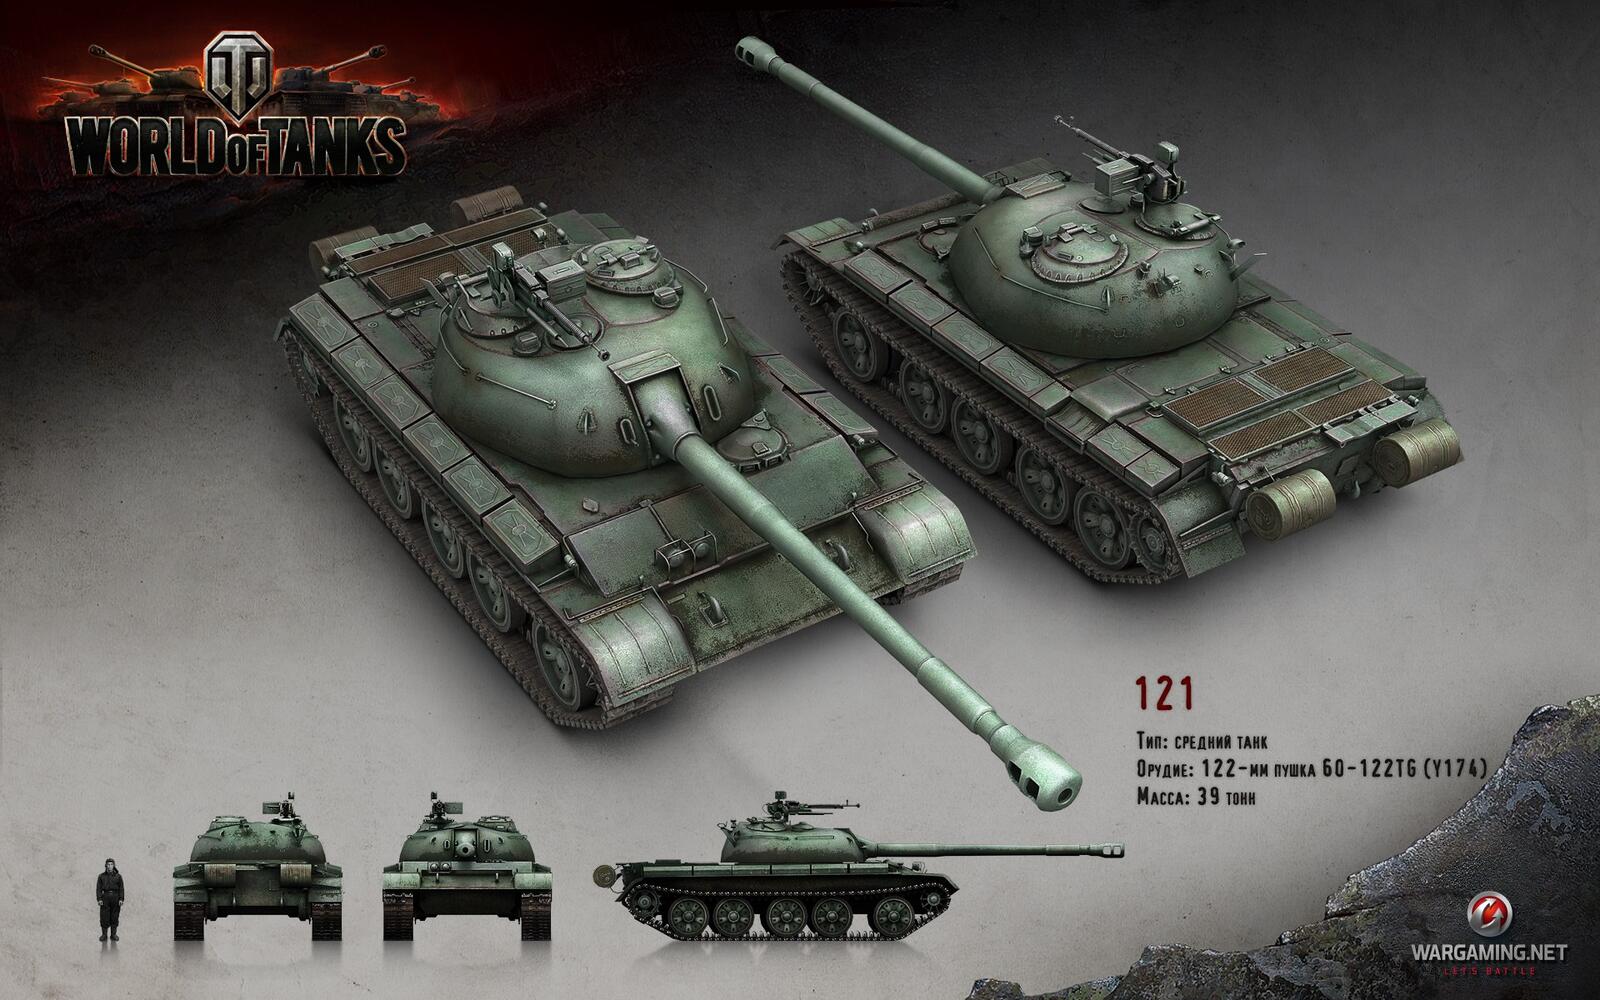 Бесплатное фото Китайский танк 121 в игре World of Tanks